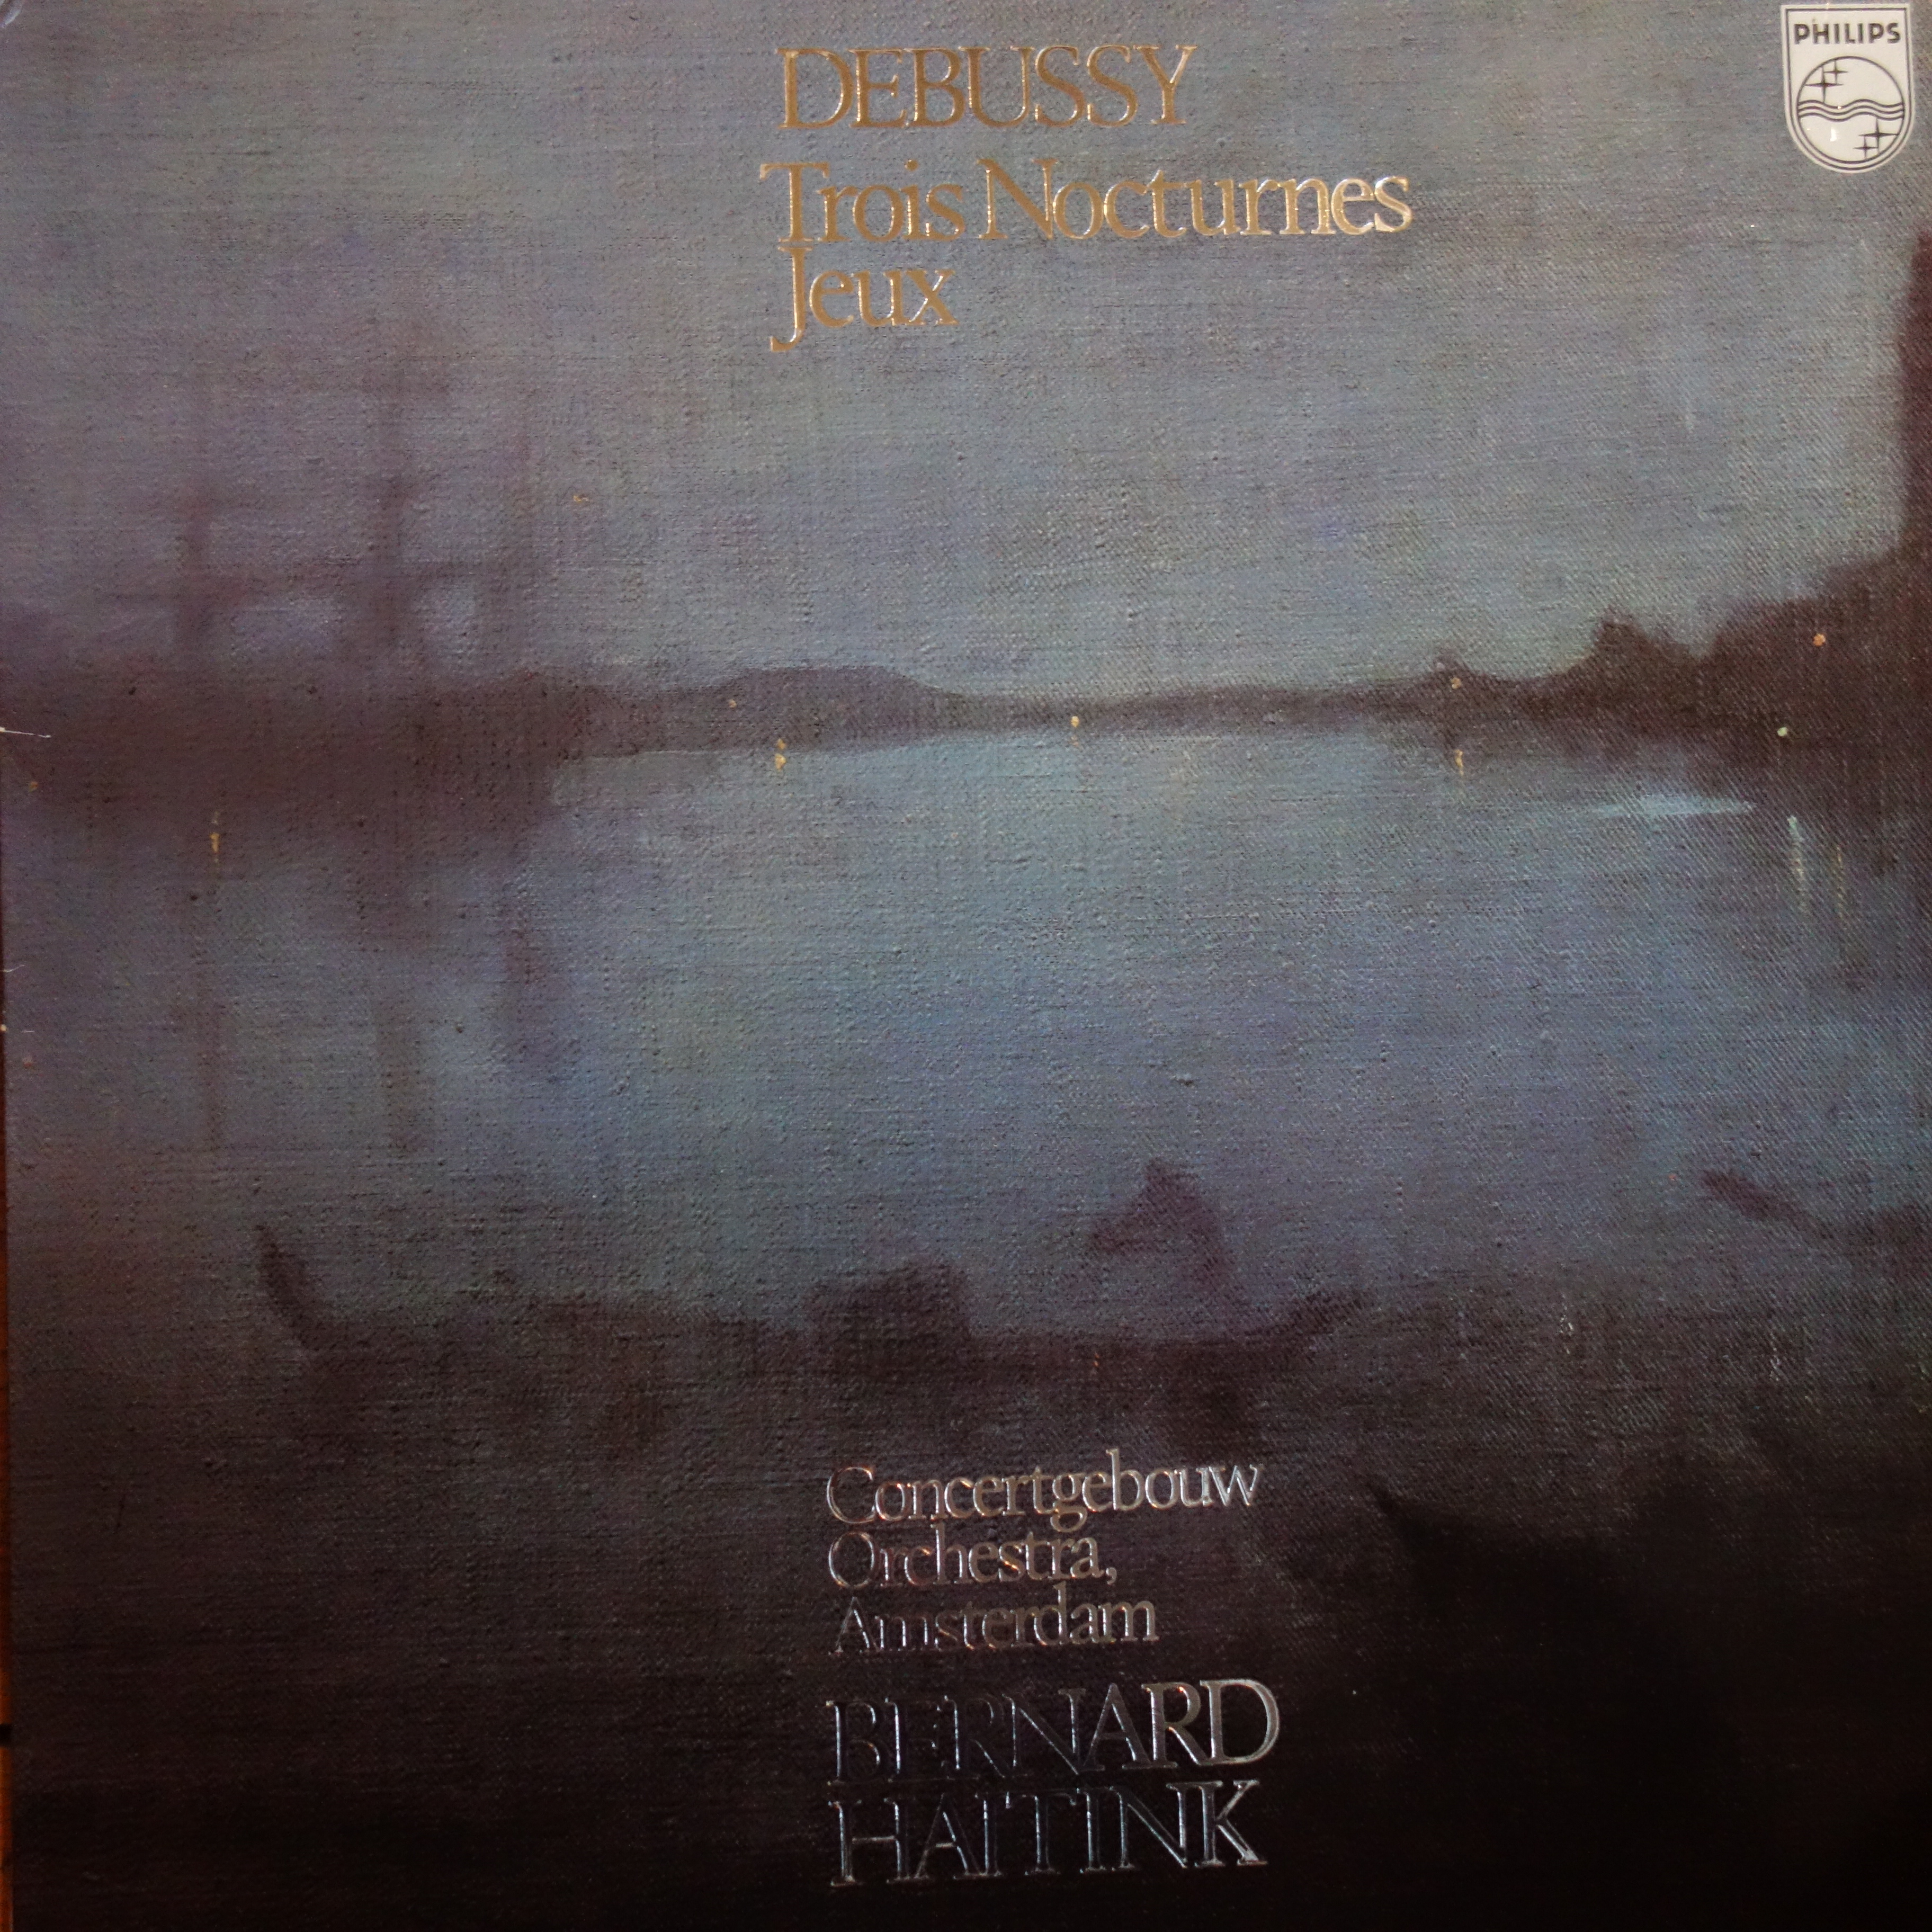 9500 674 Debussy Trois Nocturnes, Jeux / Haitink / Concertgebouw